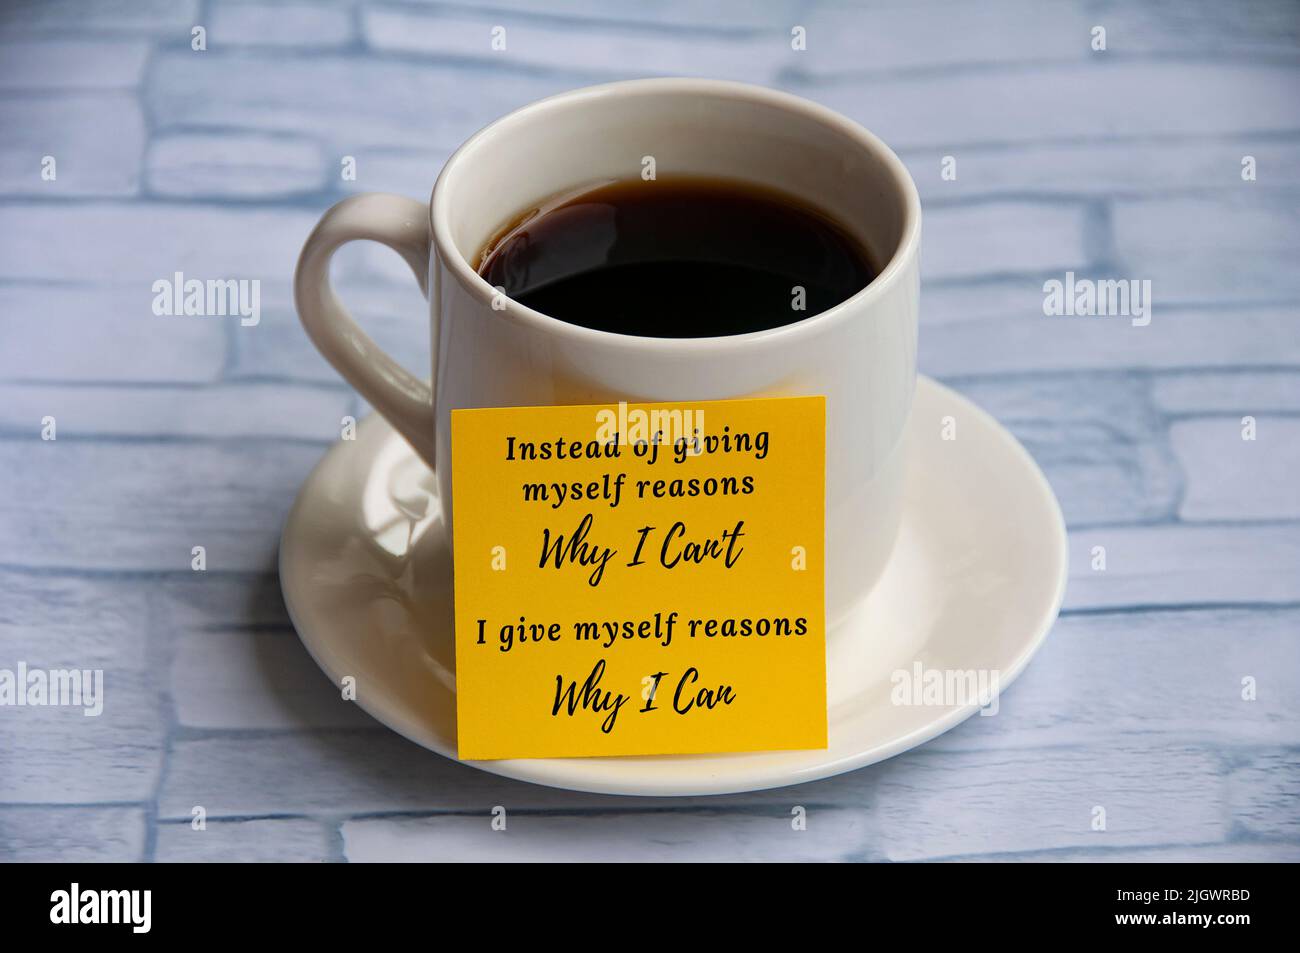 Citazione motivazionale sul blocco note giallo con sfondo della tazza di caffè - invece di darmi motivi per cui non posso, mi danno ragioni per cui posso. Motiv Foto Stock